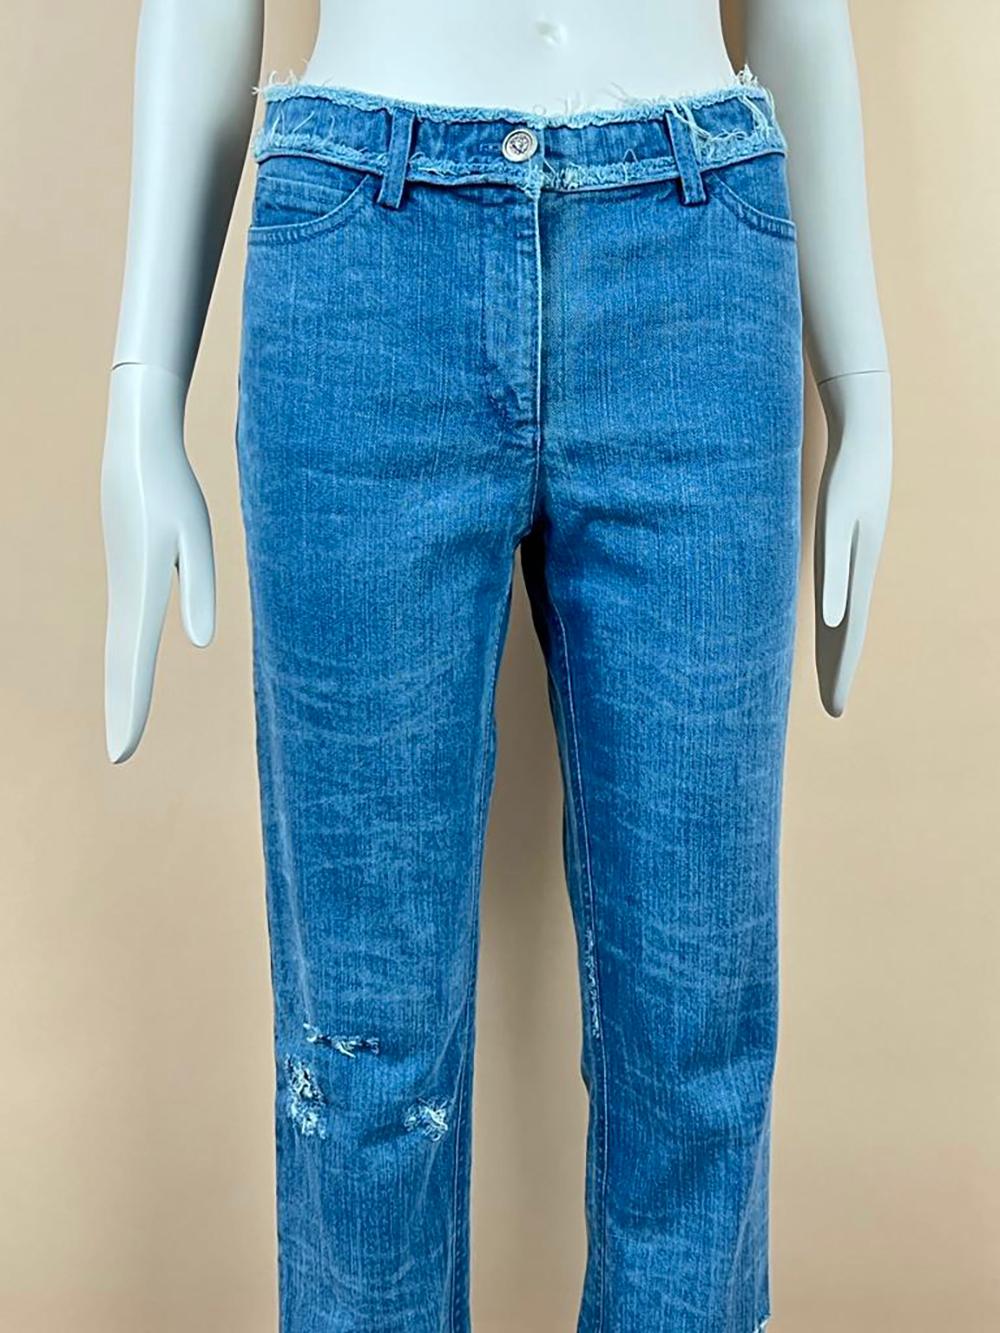 &New Chanel Blue Distressed Jeans. Einzelhandelspreis 2.200€
- CC Logo-Knöpfe mit Löwenkopf in der Mitte
- CC-Reißverschluss an der Vorderseite
Größenbezeichnung 36 FR. Nie getragen